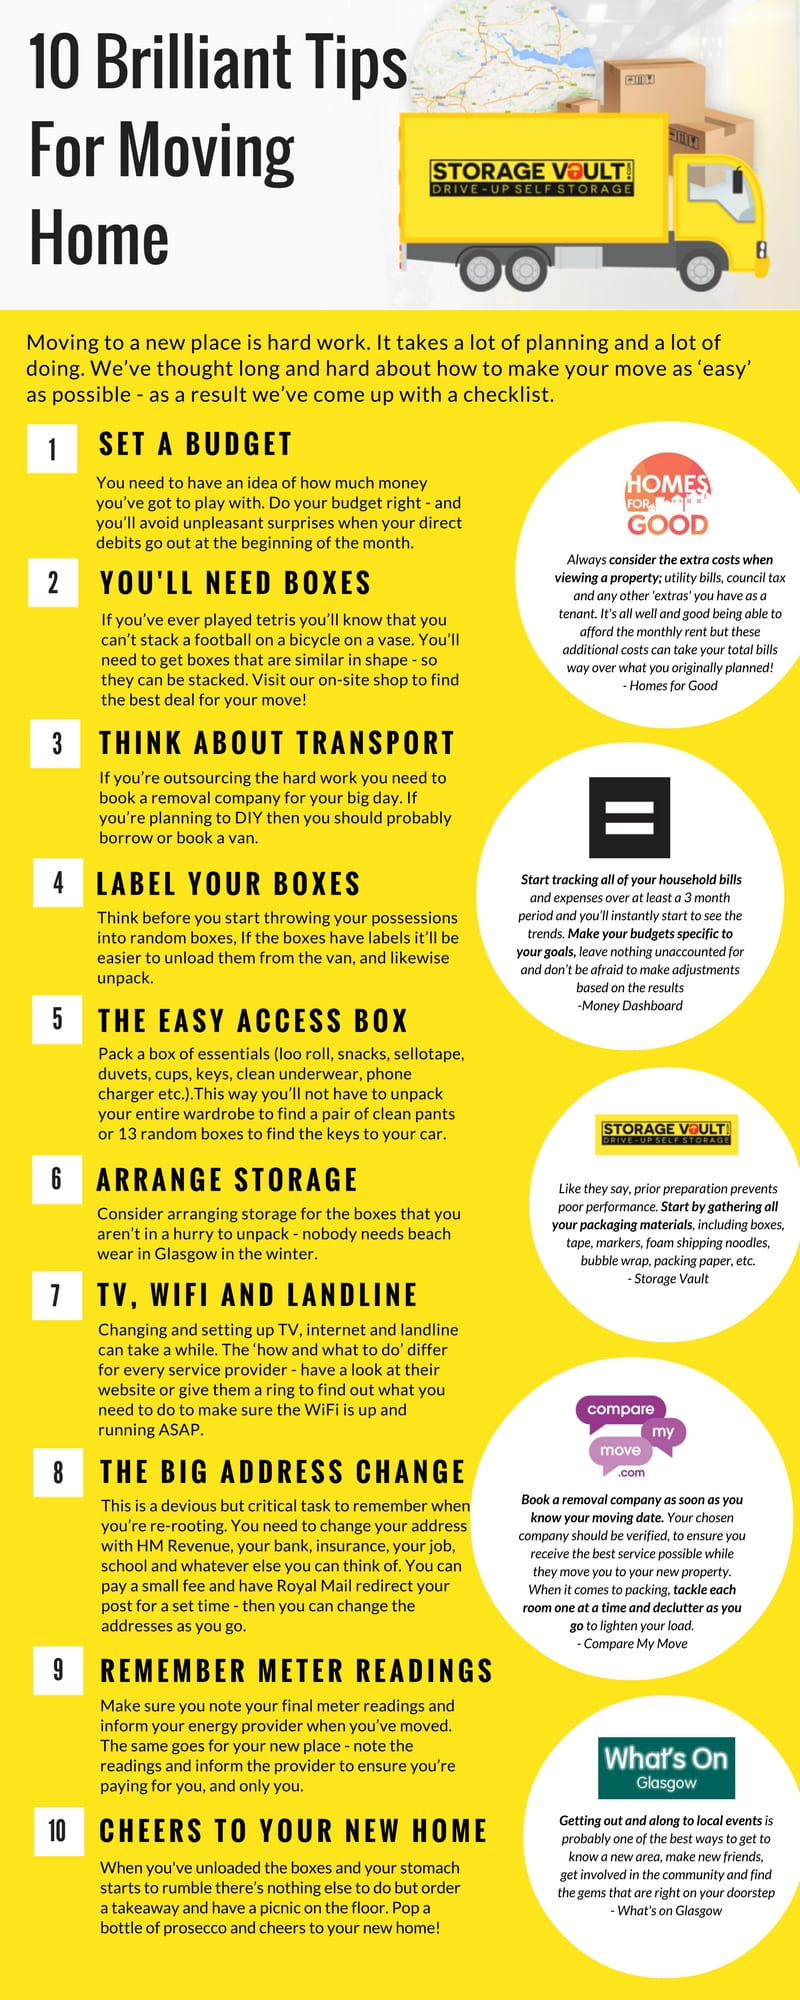 10 tips storage vault infographic